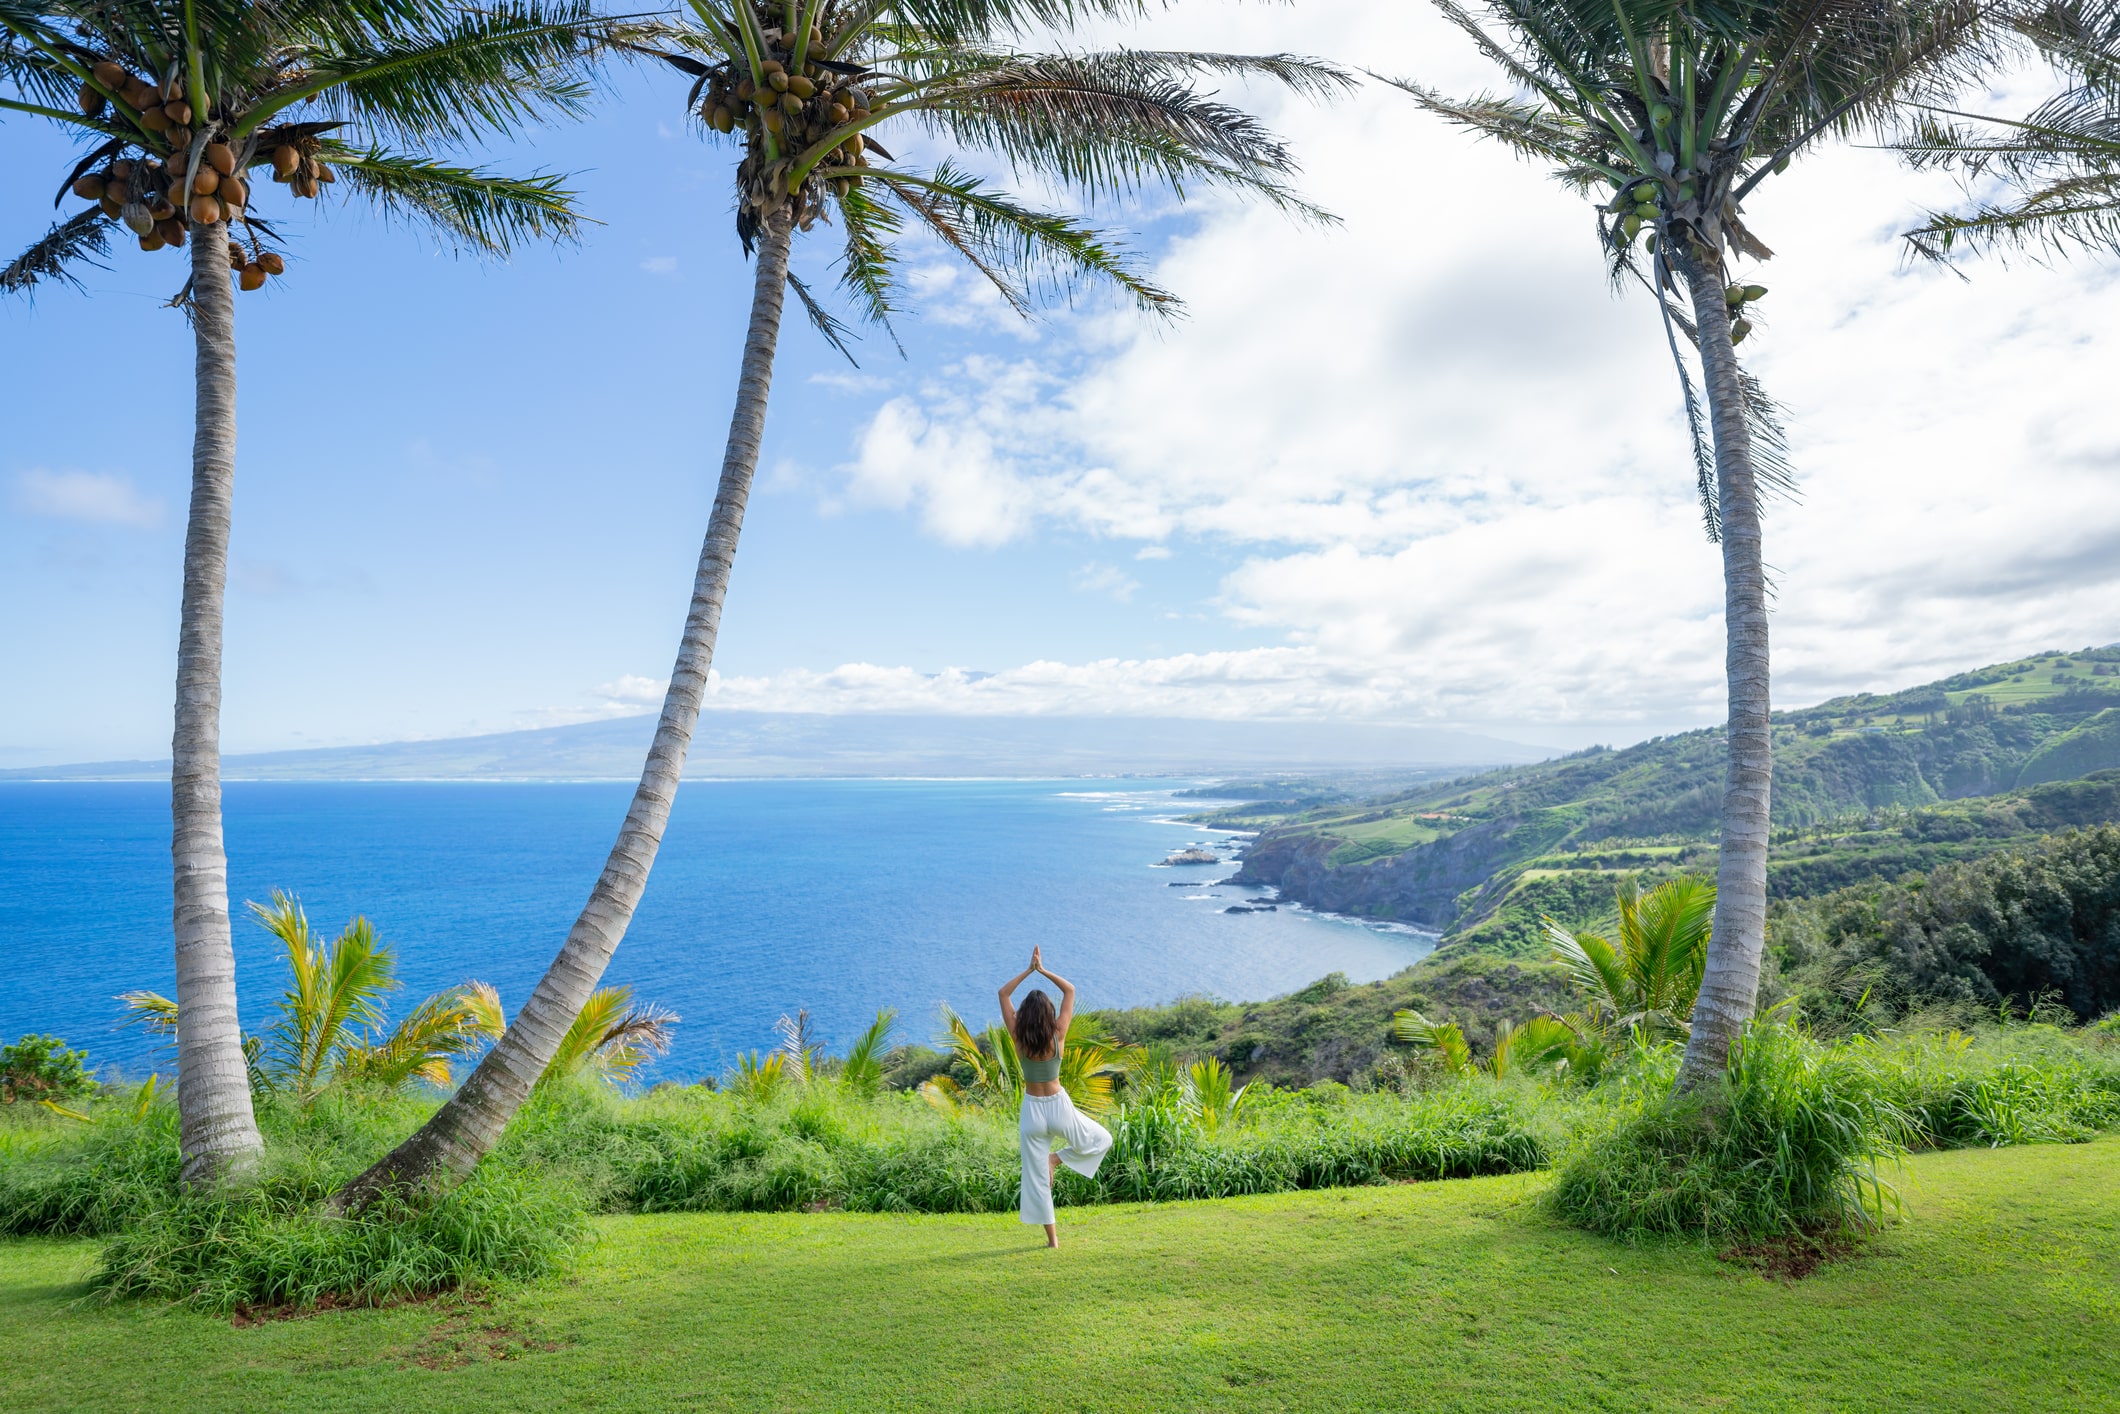 Woman does yoga at coastal overlook in Hawaii.